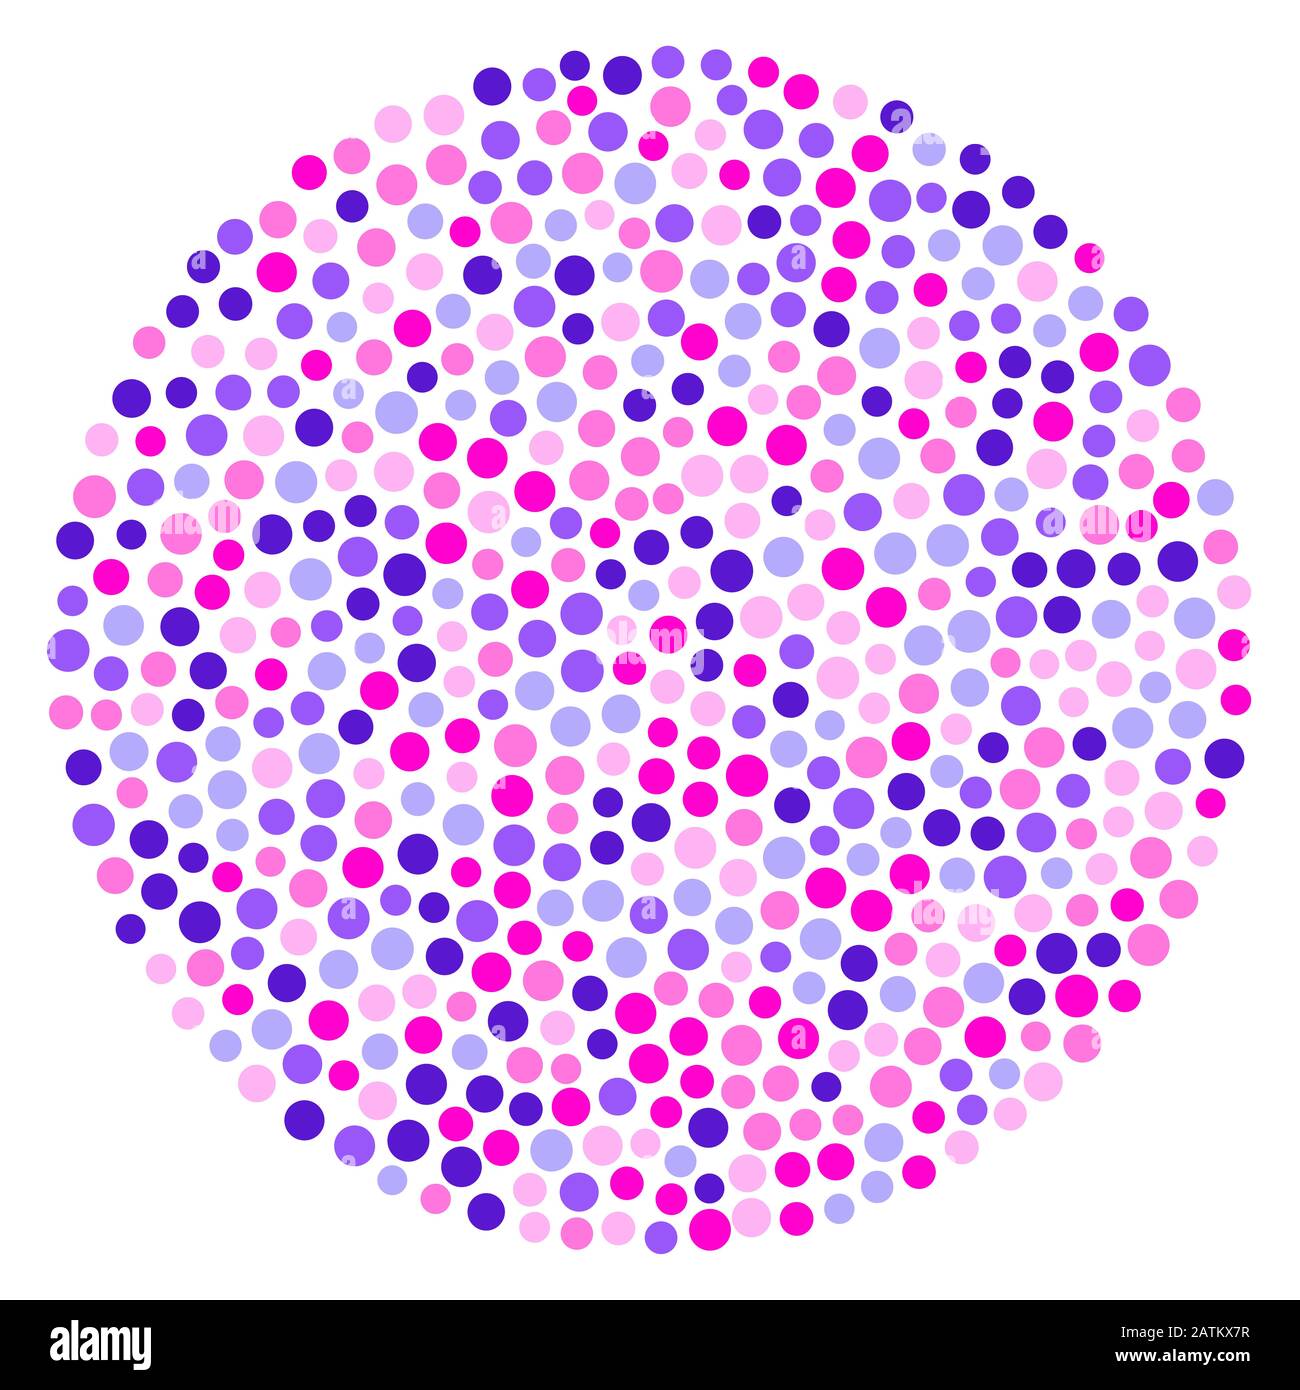 Forma de círculo hecha con círculos rosados y morados. Puntos colocados aleatoriamente de color rosa y morado formando un área circular y manchada. Foto de stock